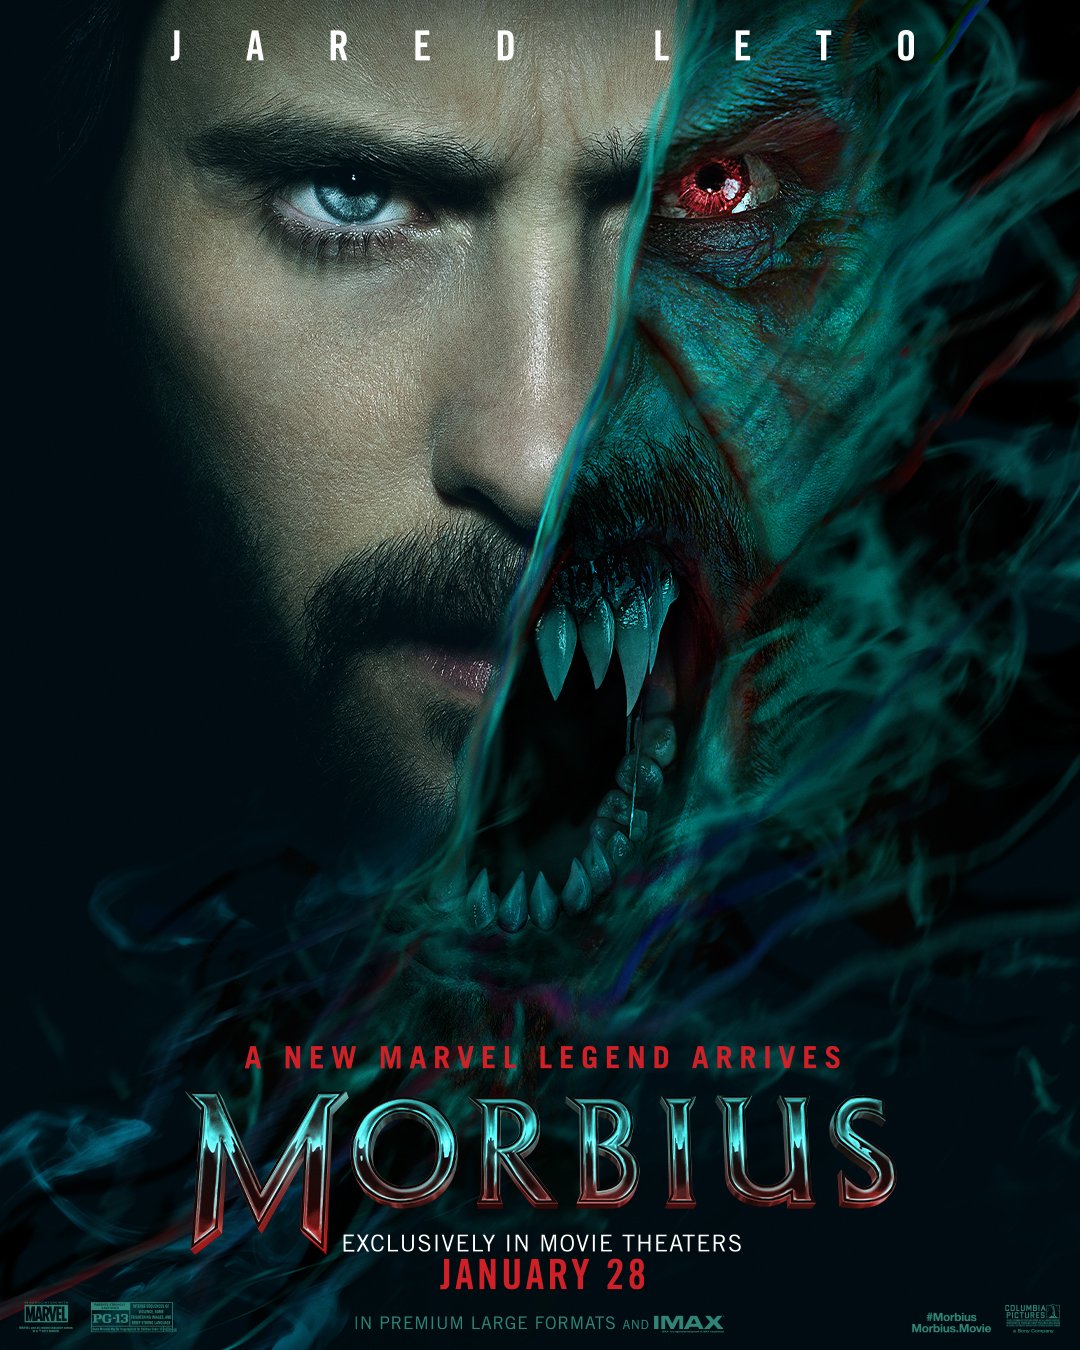 Morbius Sony Pictures divulga poster na CCXP World 2021 - Morbius | Sony Pictures divulga pôster e cena da transformação na CCXP World 2021